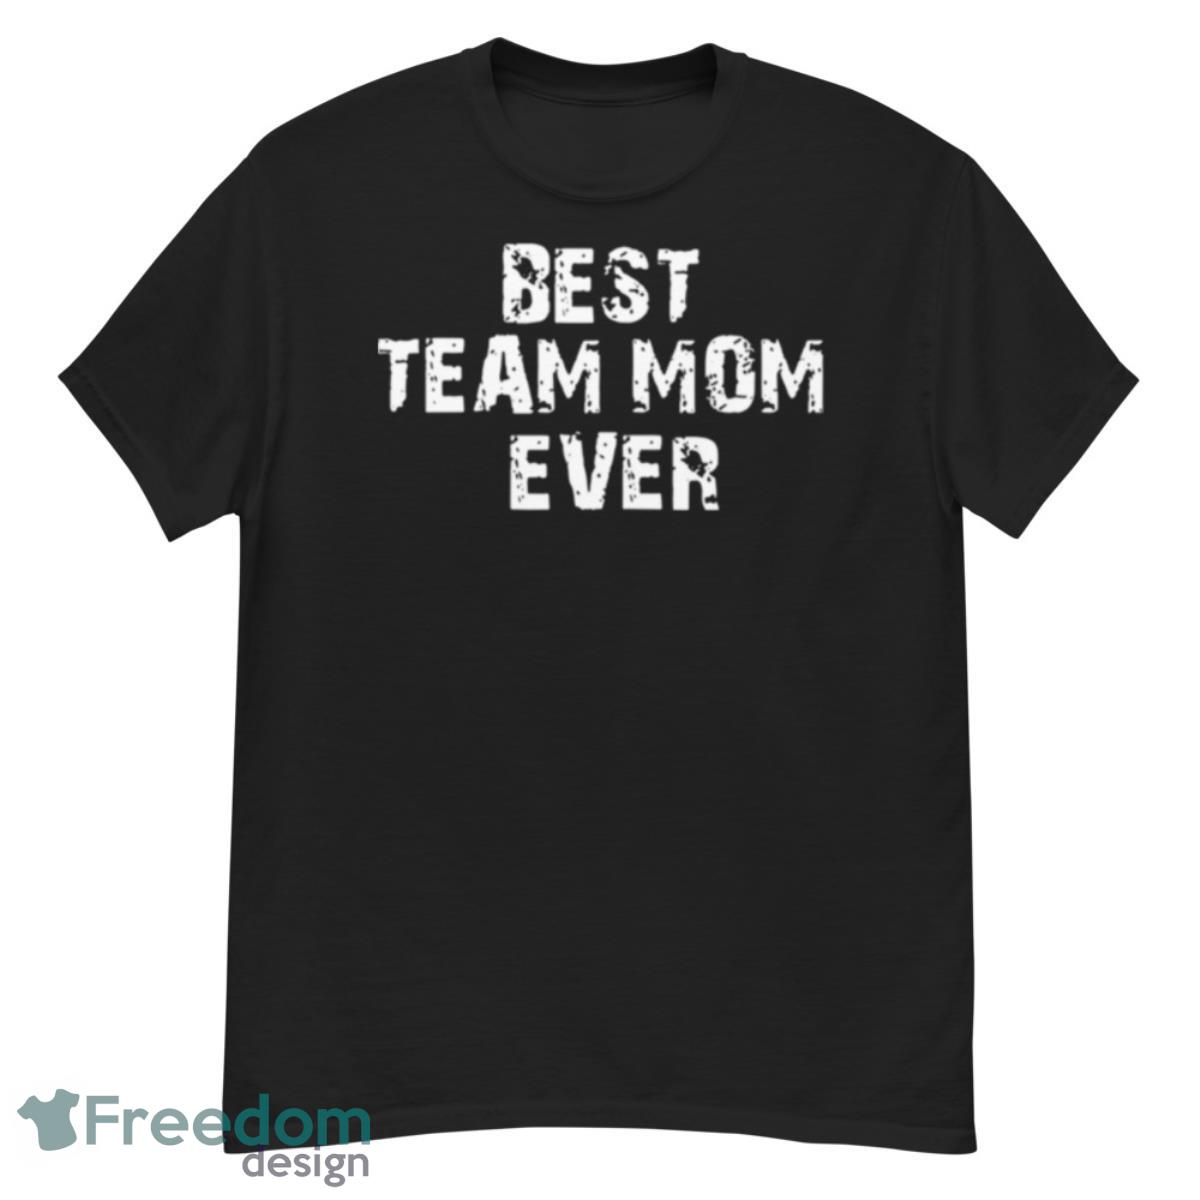 Best Team Mom Ever Shirt - G500 Men’s Classic T-Shirt